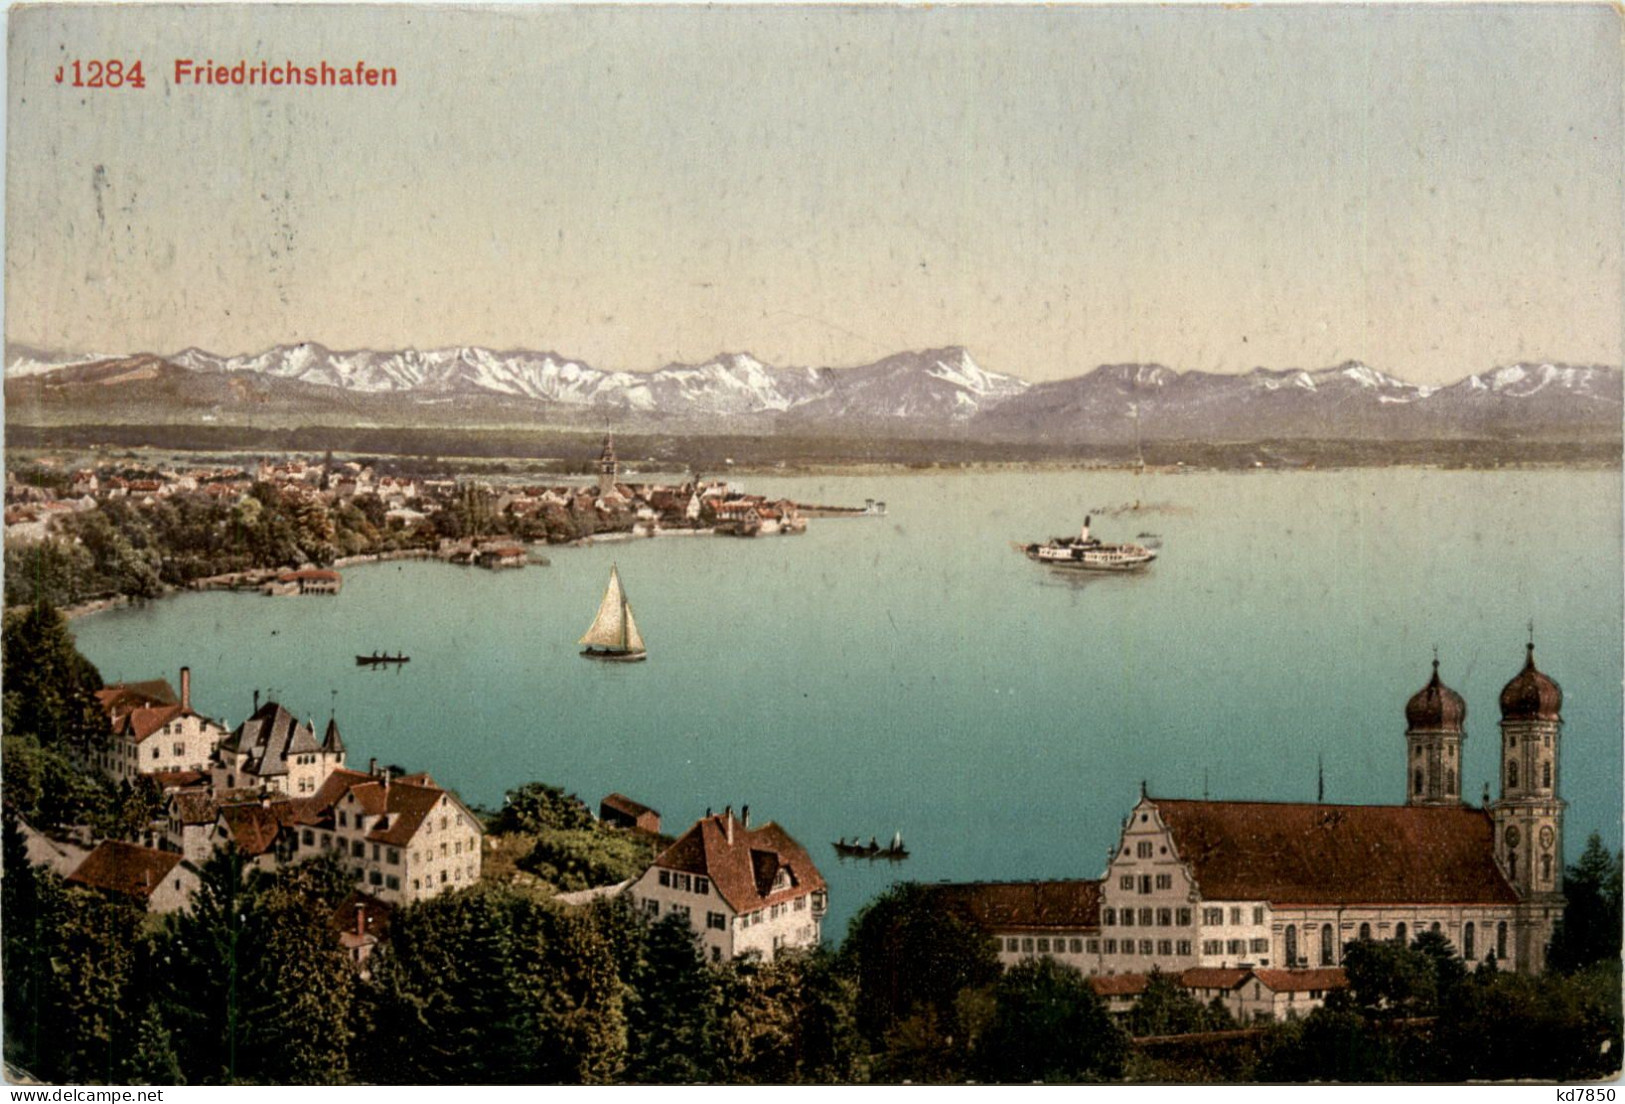 Friedrichshafen, - Friedrichshafen